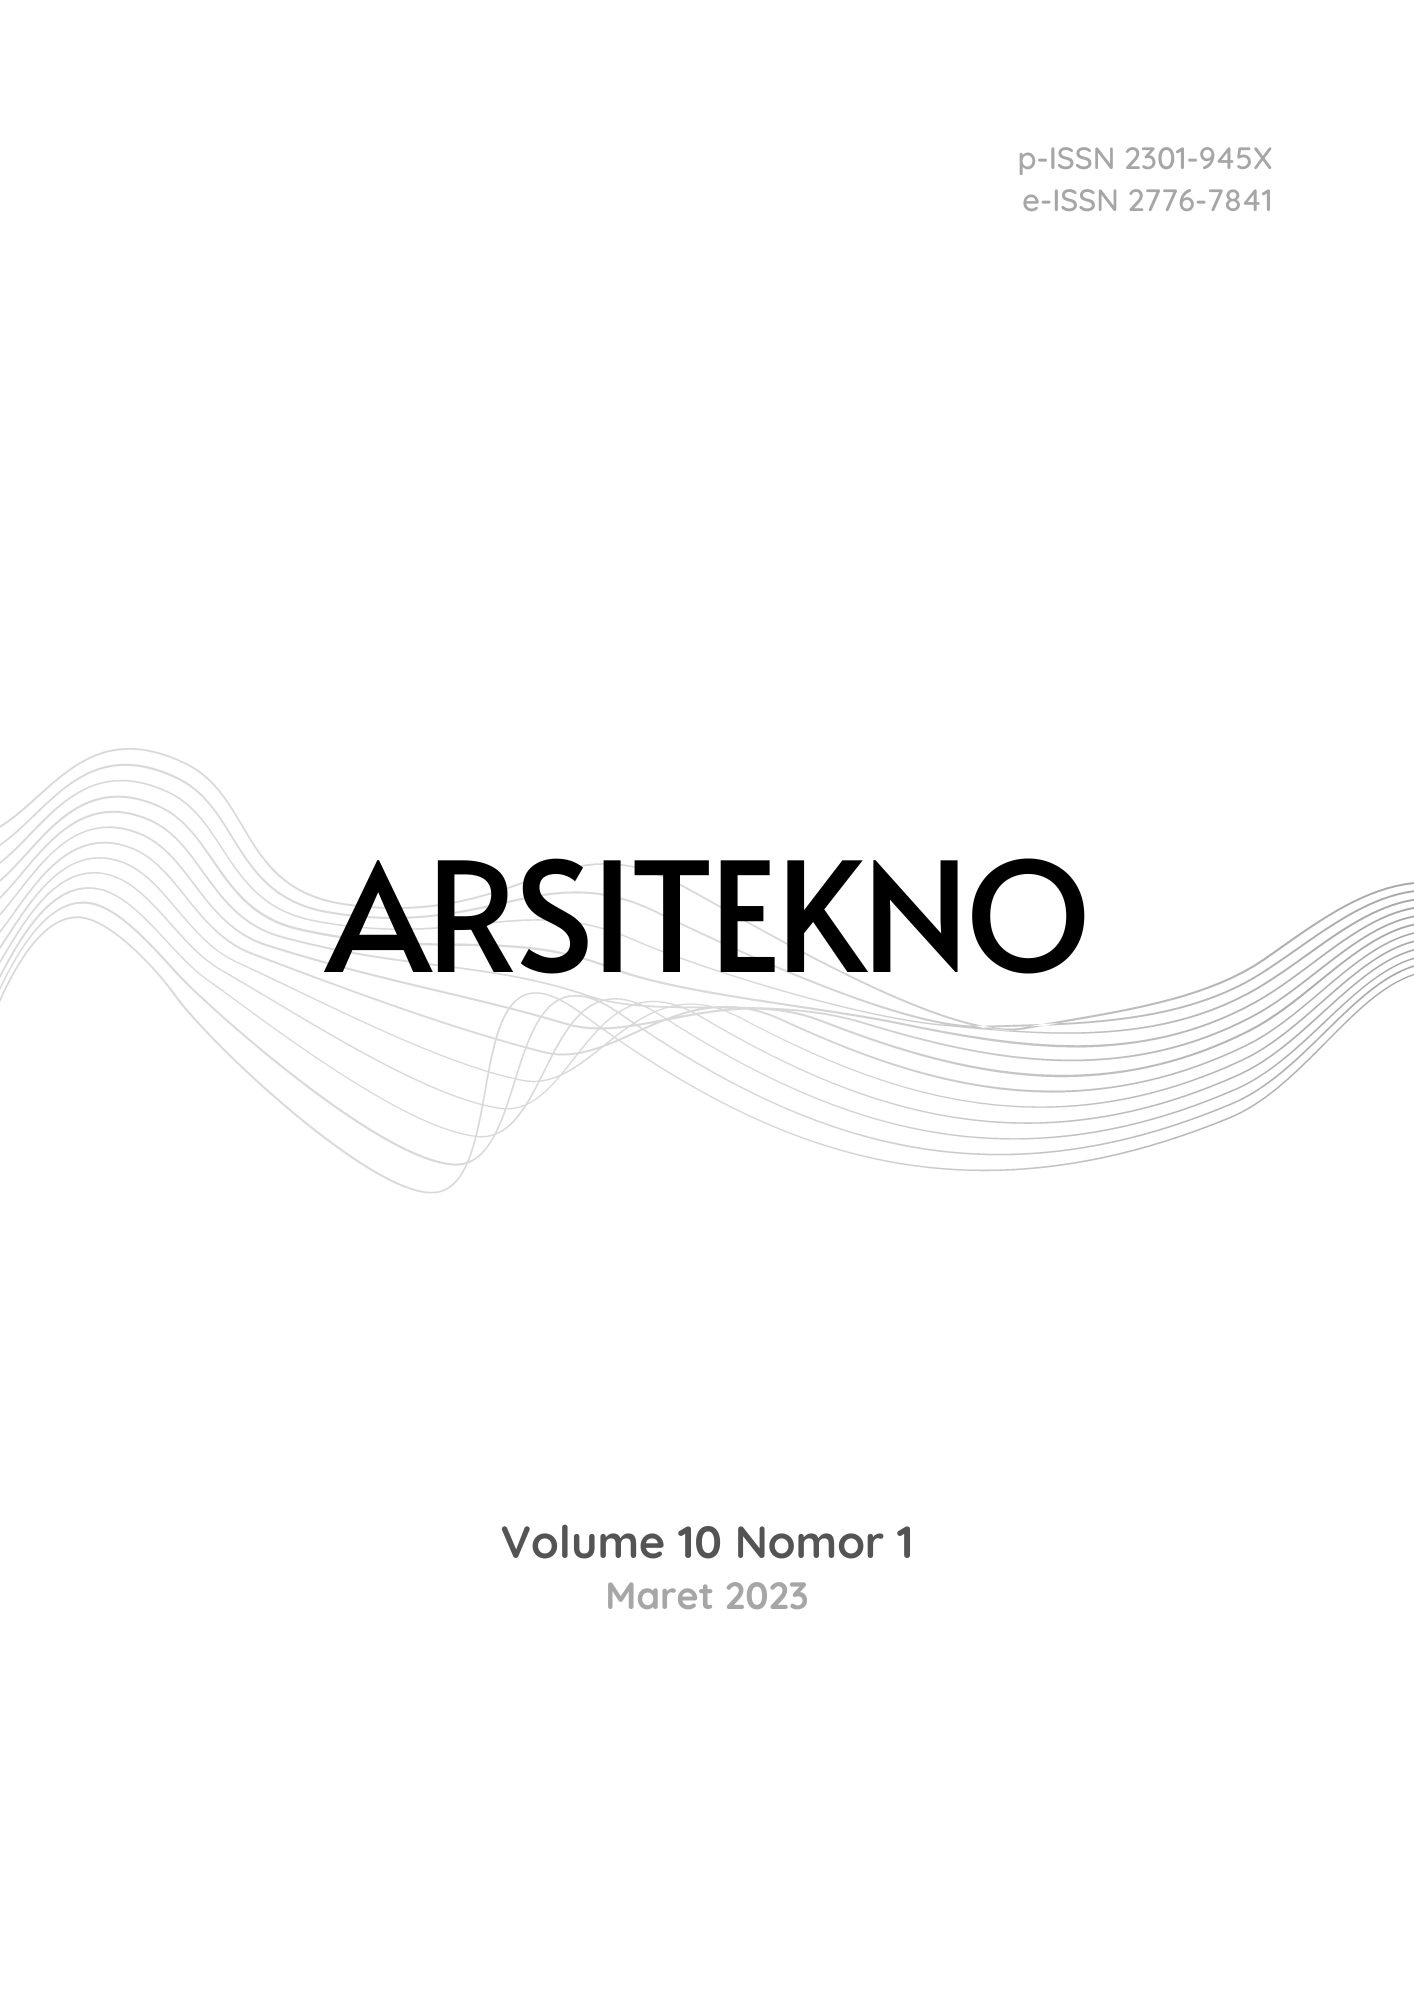 Arsitekno Vol 9 No 2